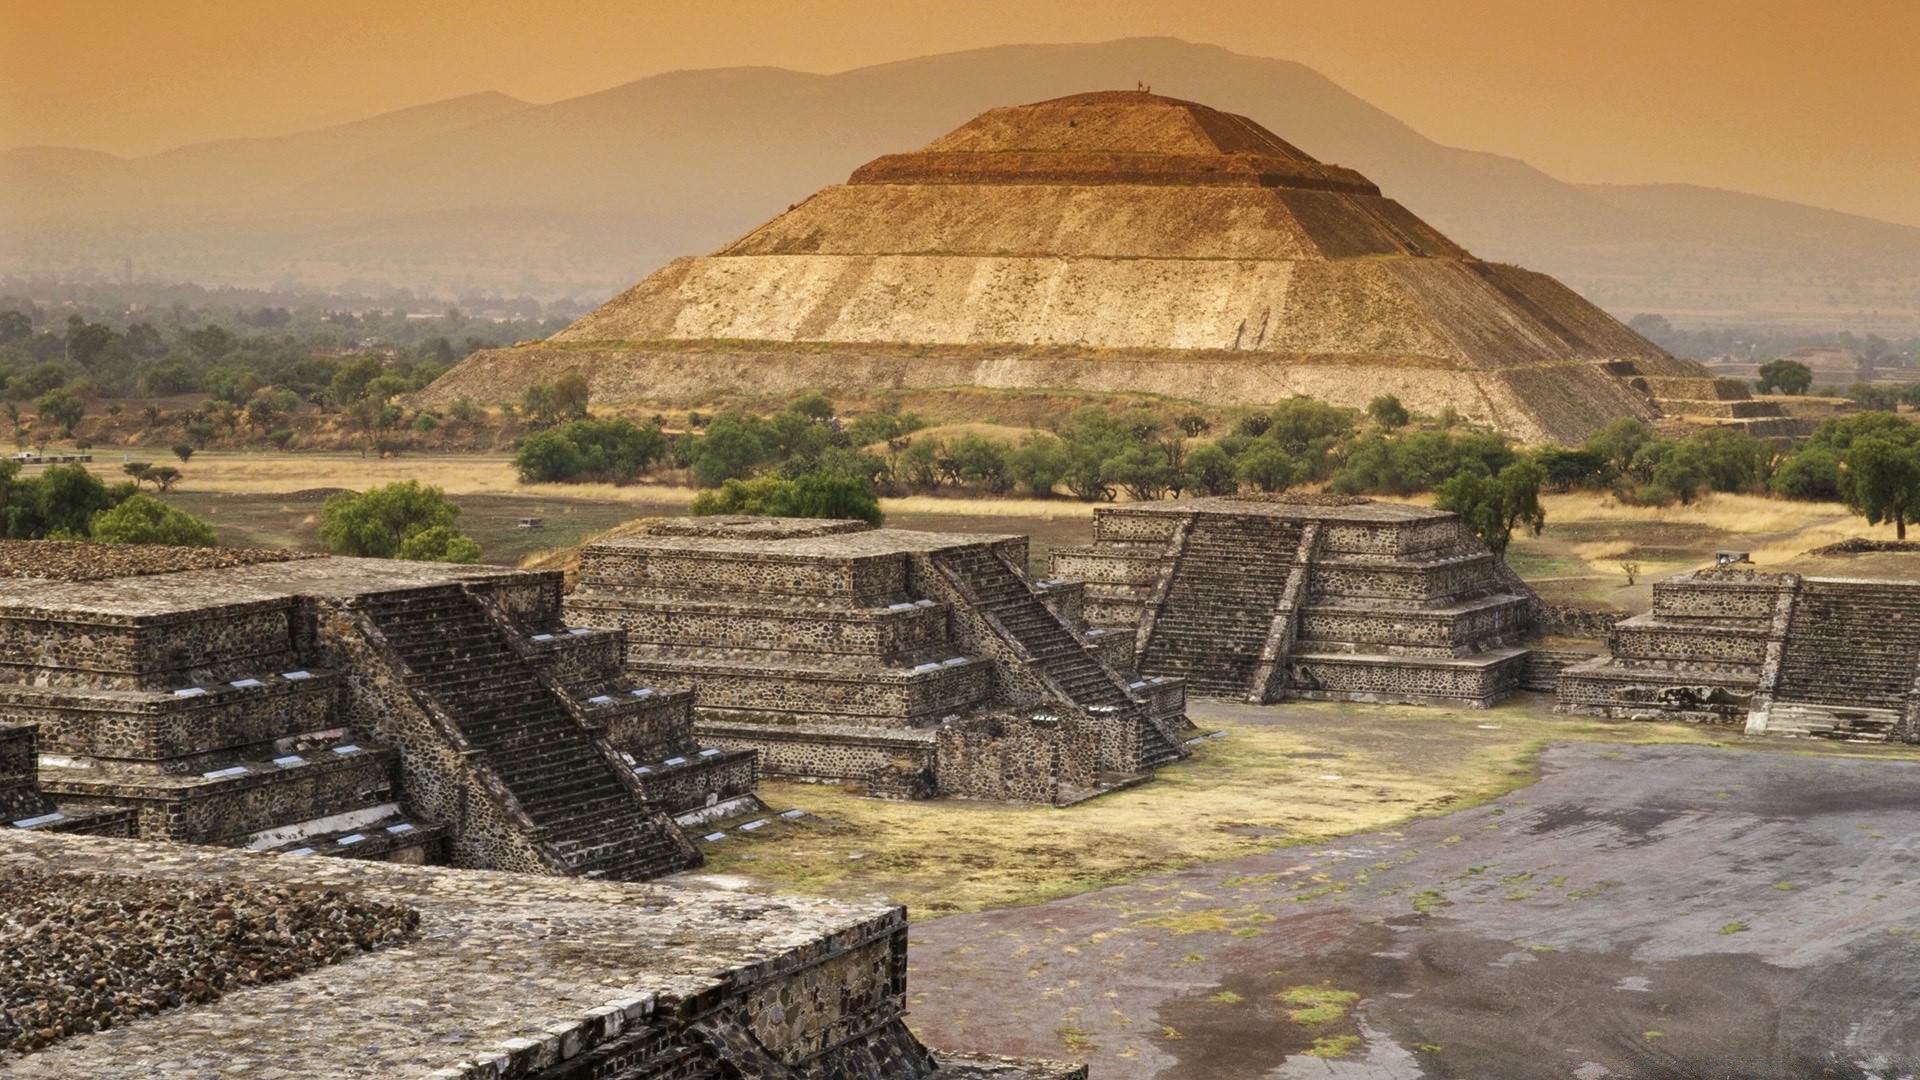 америка пирамида археология древние храм путешествия архитектура разорение ацтекский пейзаж шаг туризм камень горы дом небо на открытом воздухе религия сайт достопримечательность